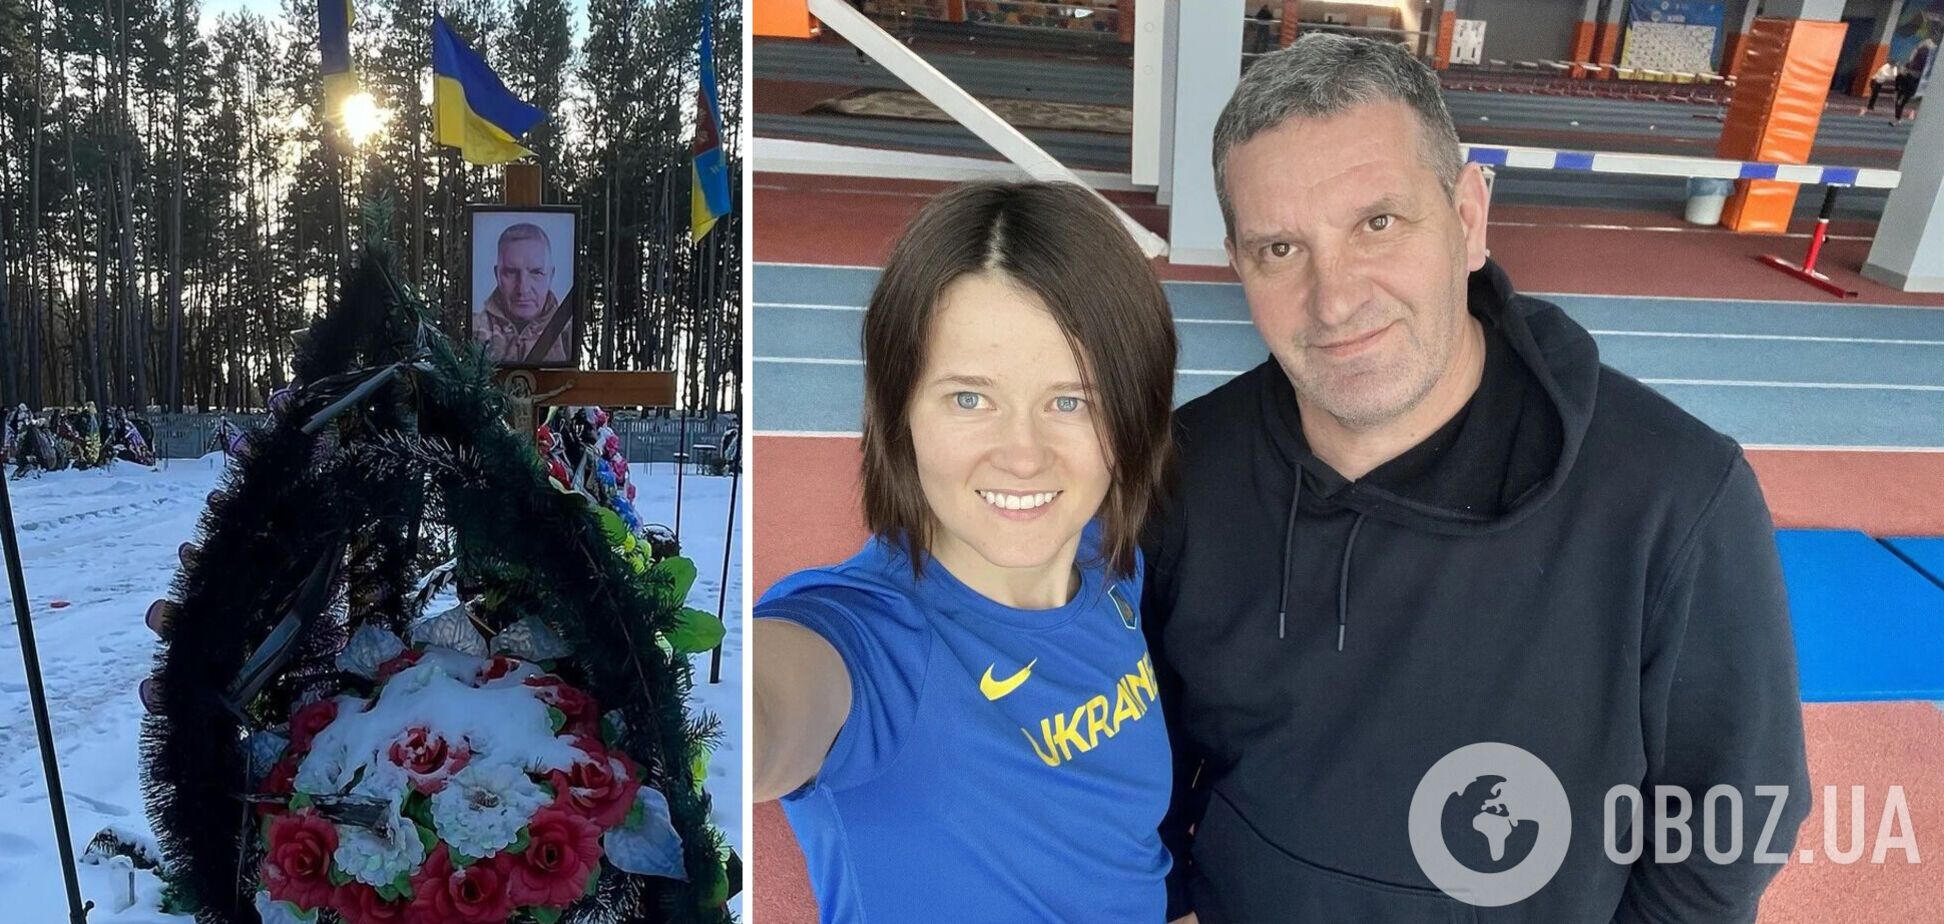 Спокійно запрошують росіян: українська зірка марафонів, чий тренер був вбитий РФ, обурена складом учасників змагань в Цюріху